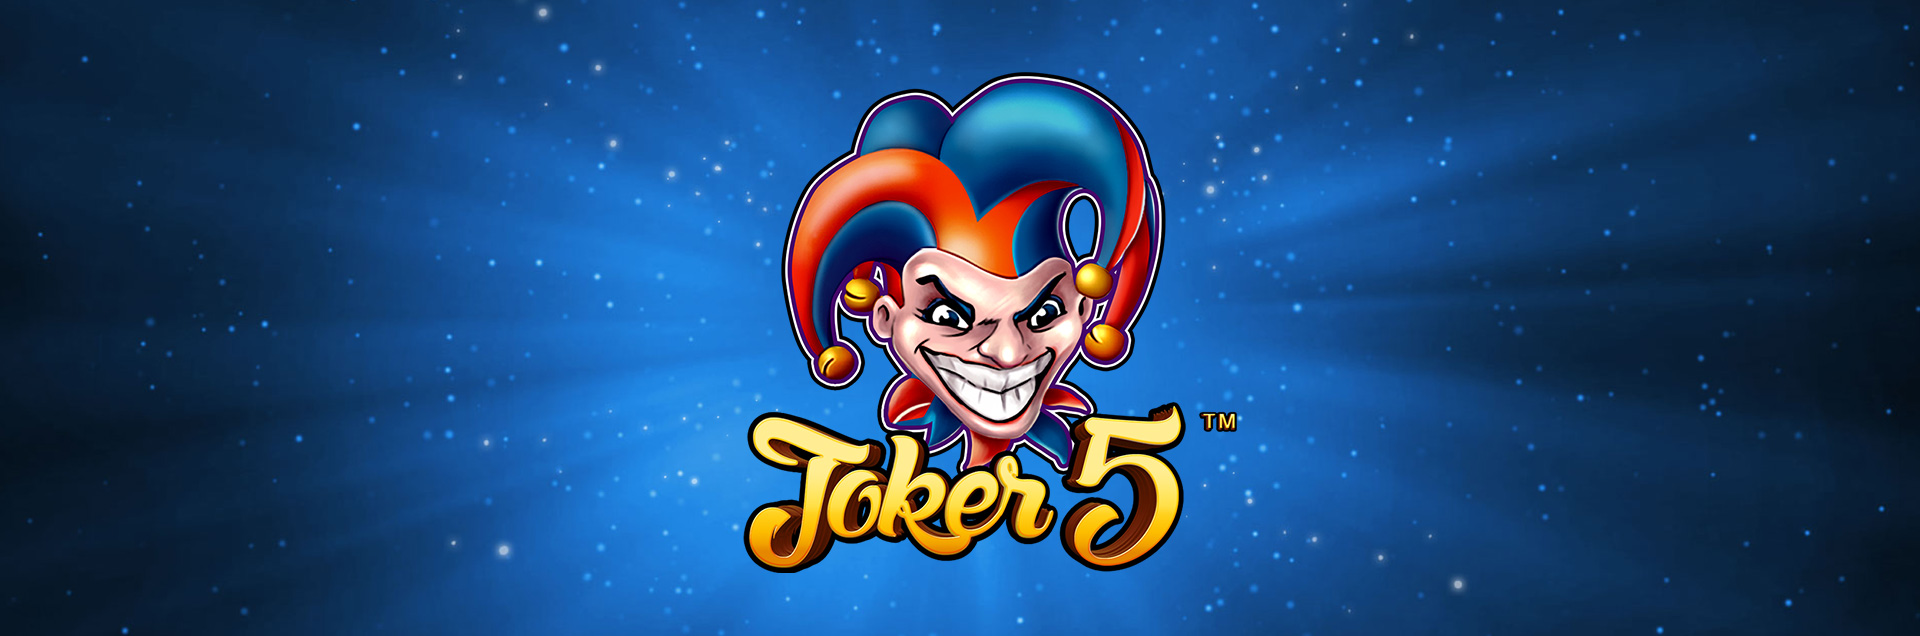 Joker 5 header games fan